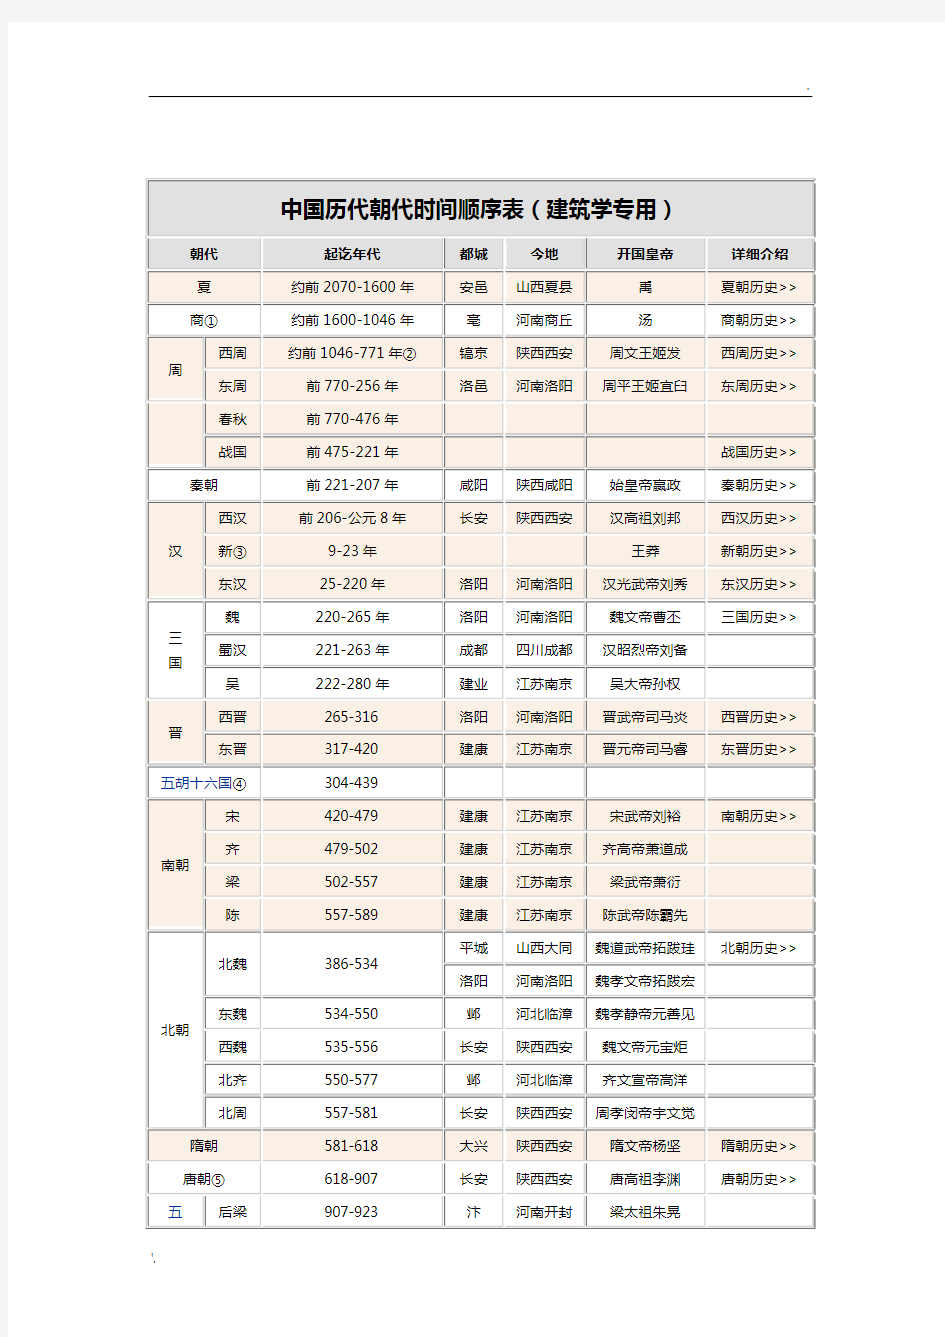 中国历代朝代时间顺序及都城位置详表